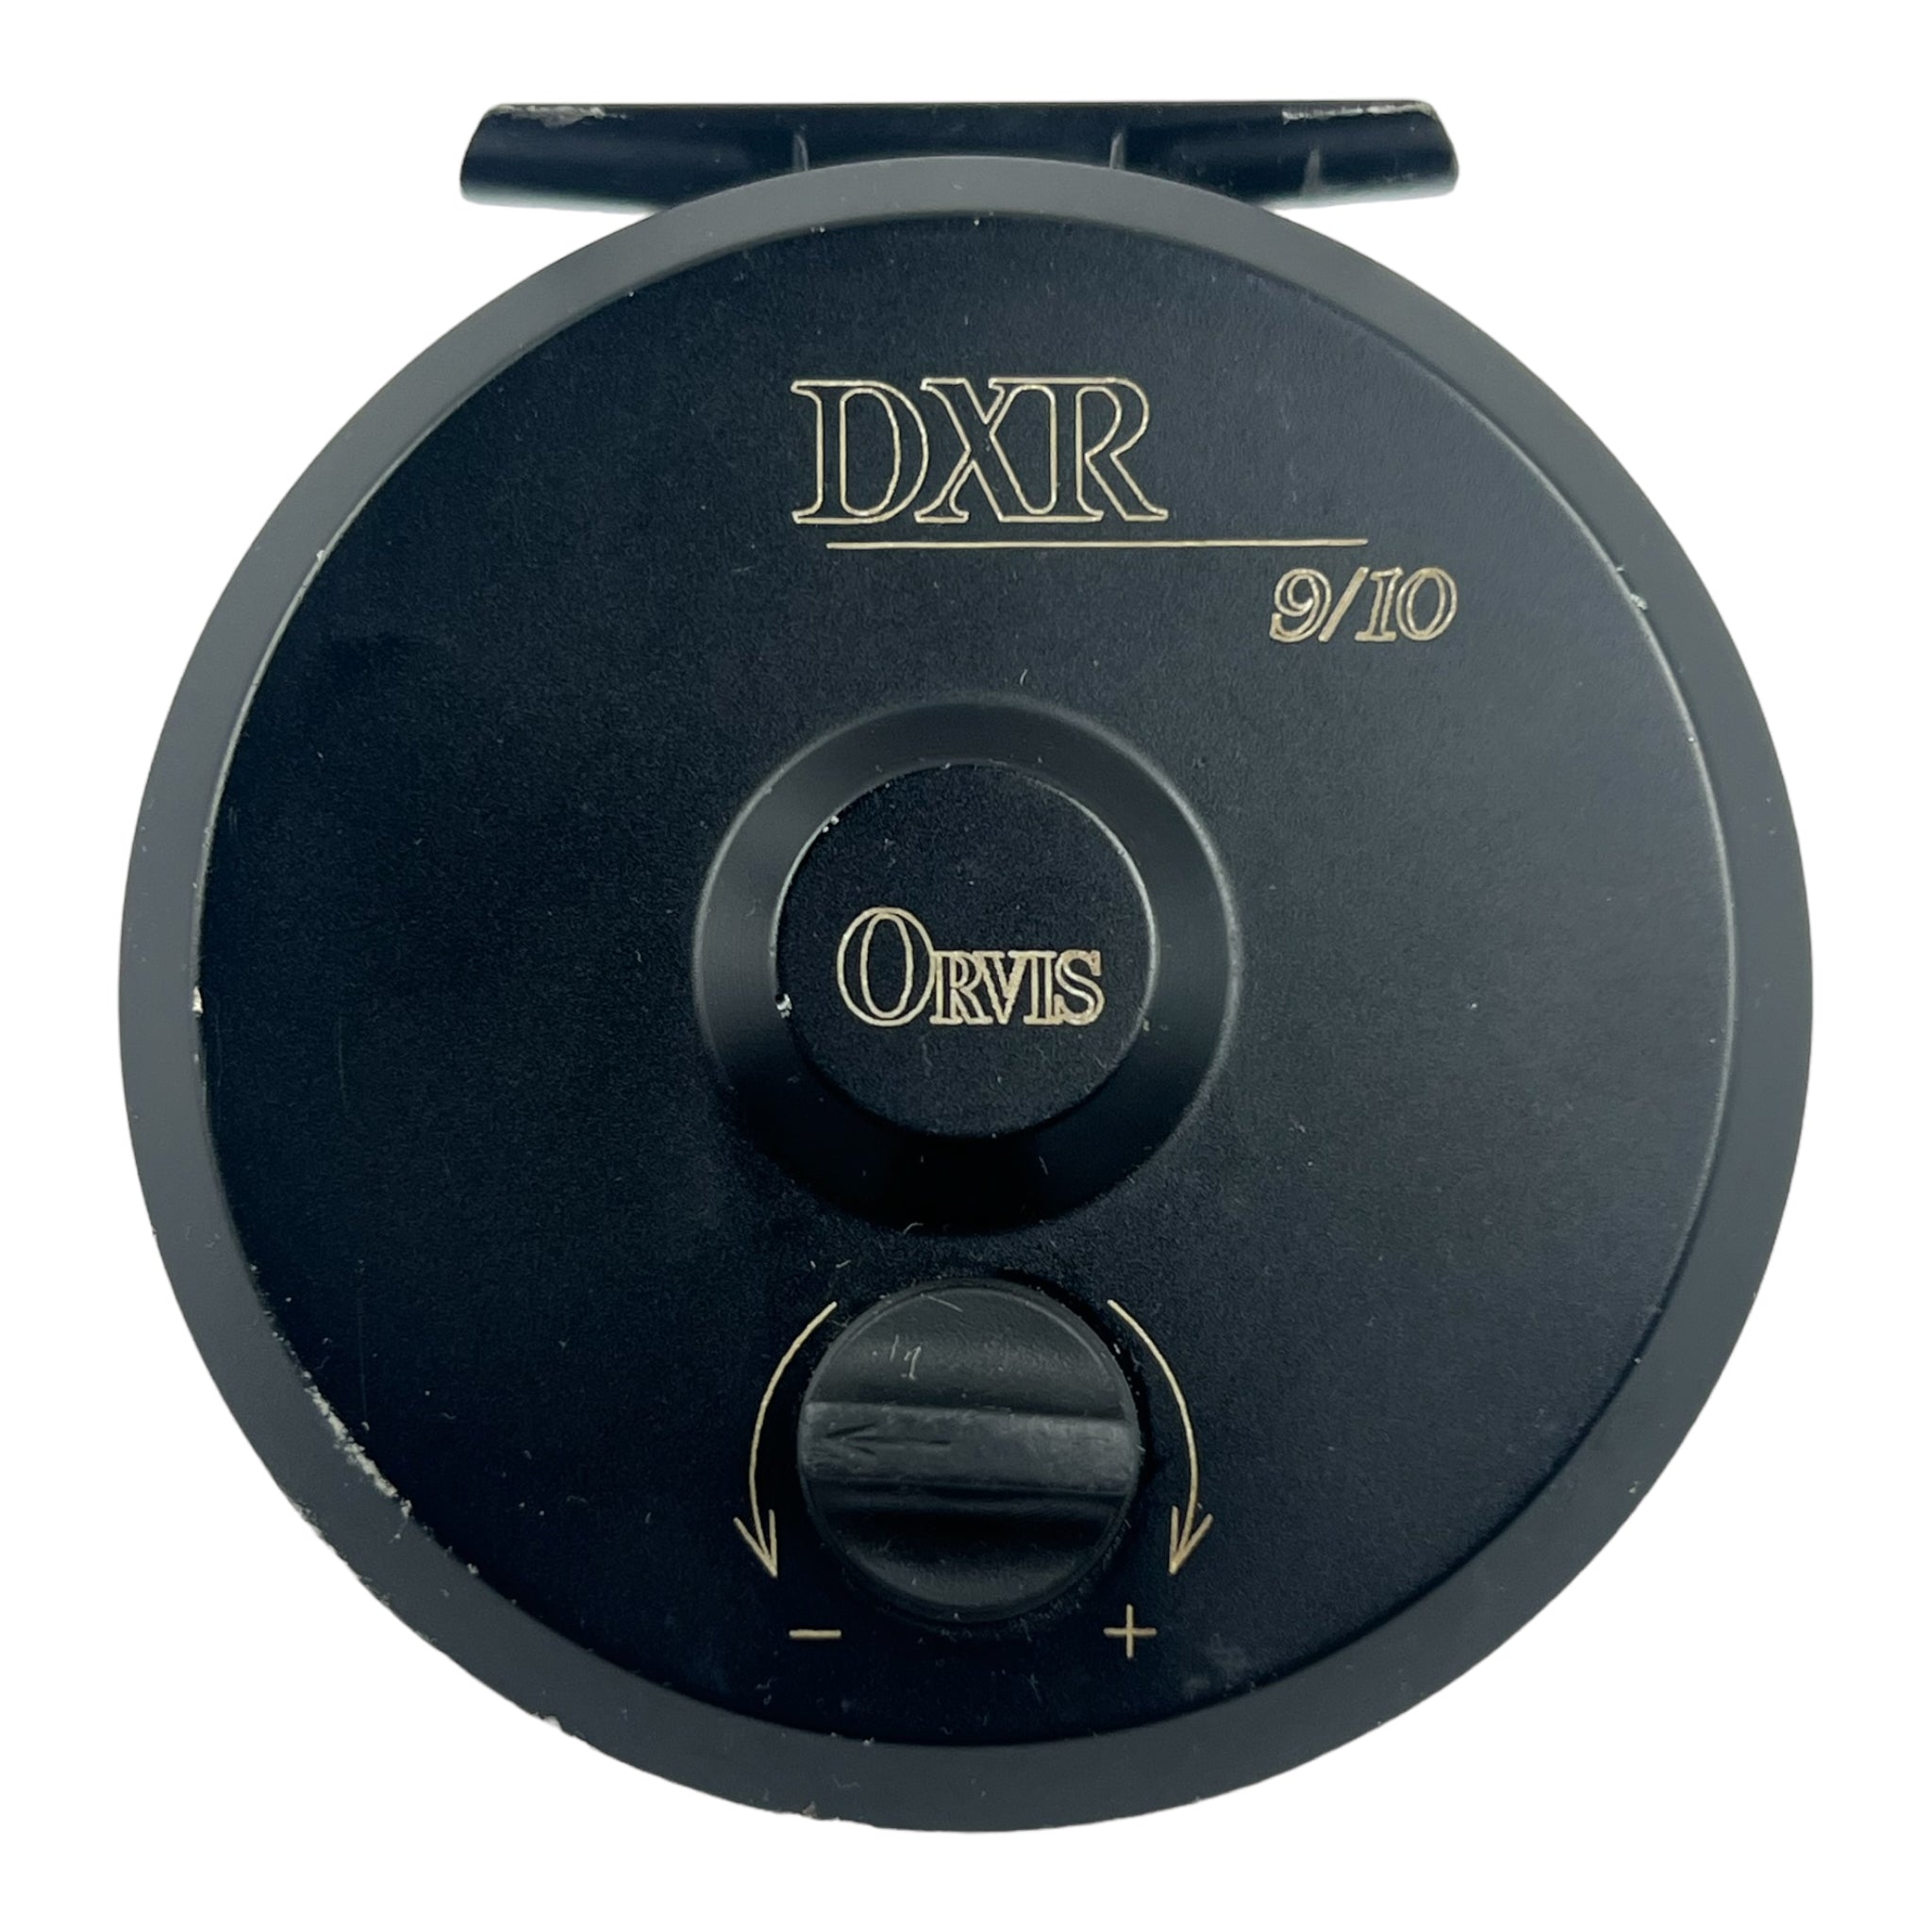 Orvis DXR 9/10 Direct Drive Reel – Bear's Den Fly Fishing Co.